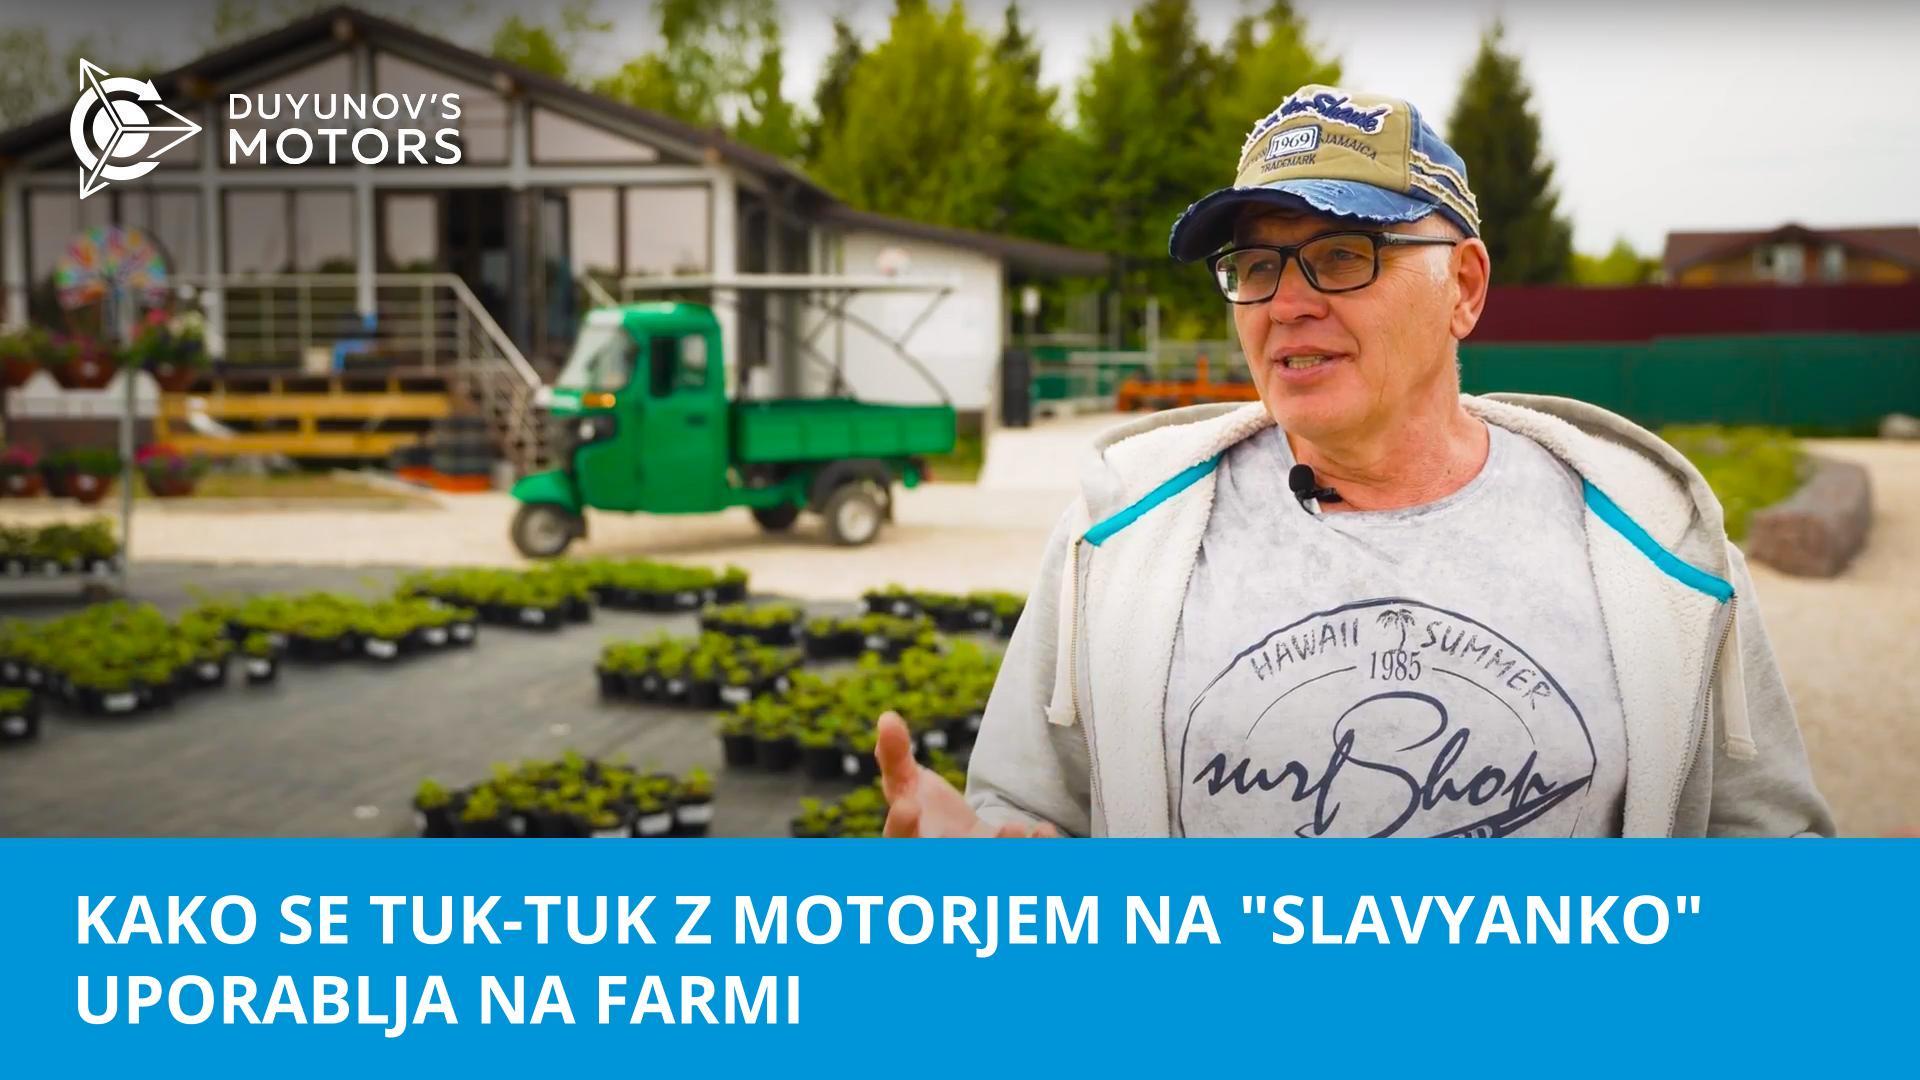 Pomočnik pri okolju prijaznem poslu: kako se tuk-tuk z motorjem na "Slavyanko" uporablja na farmi